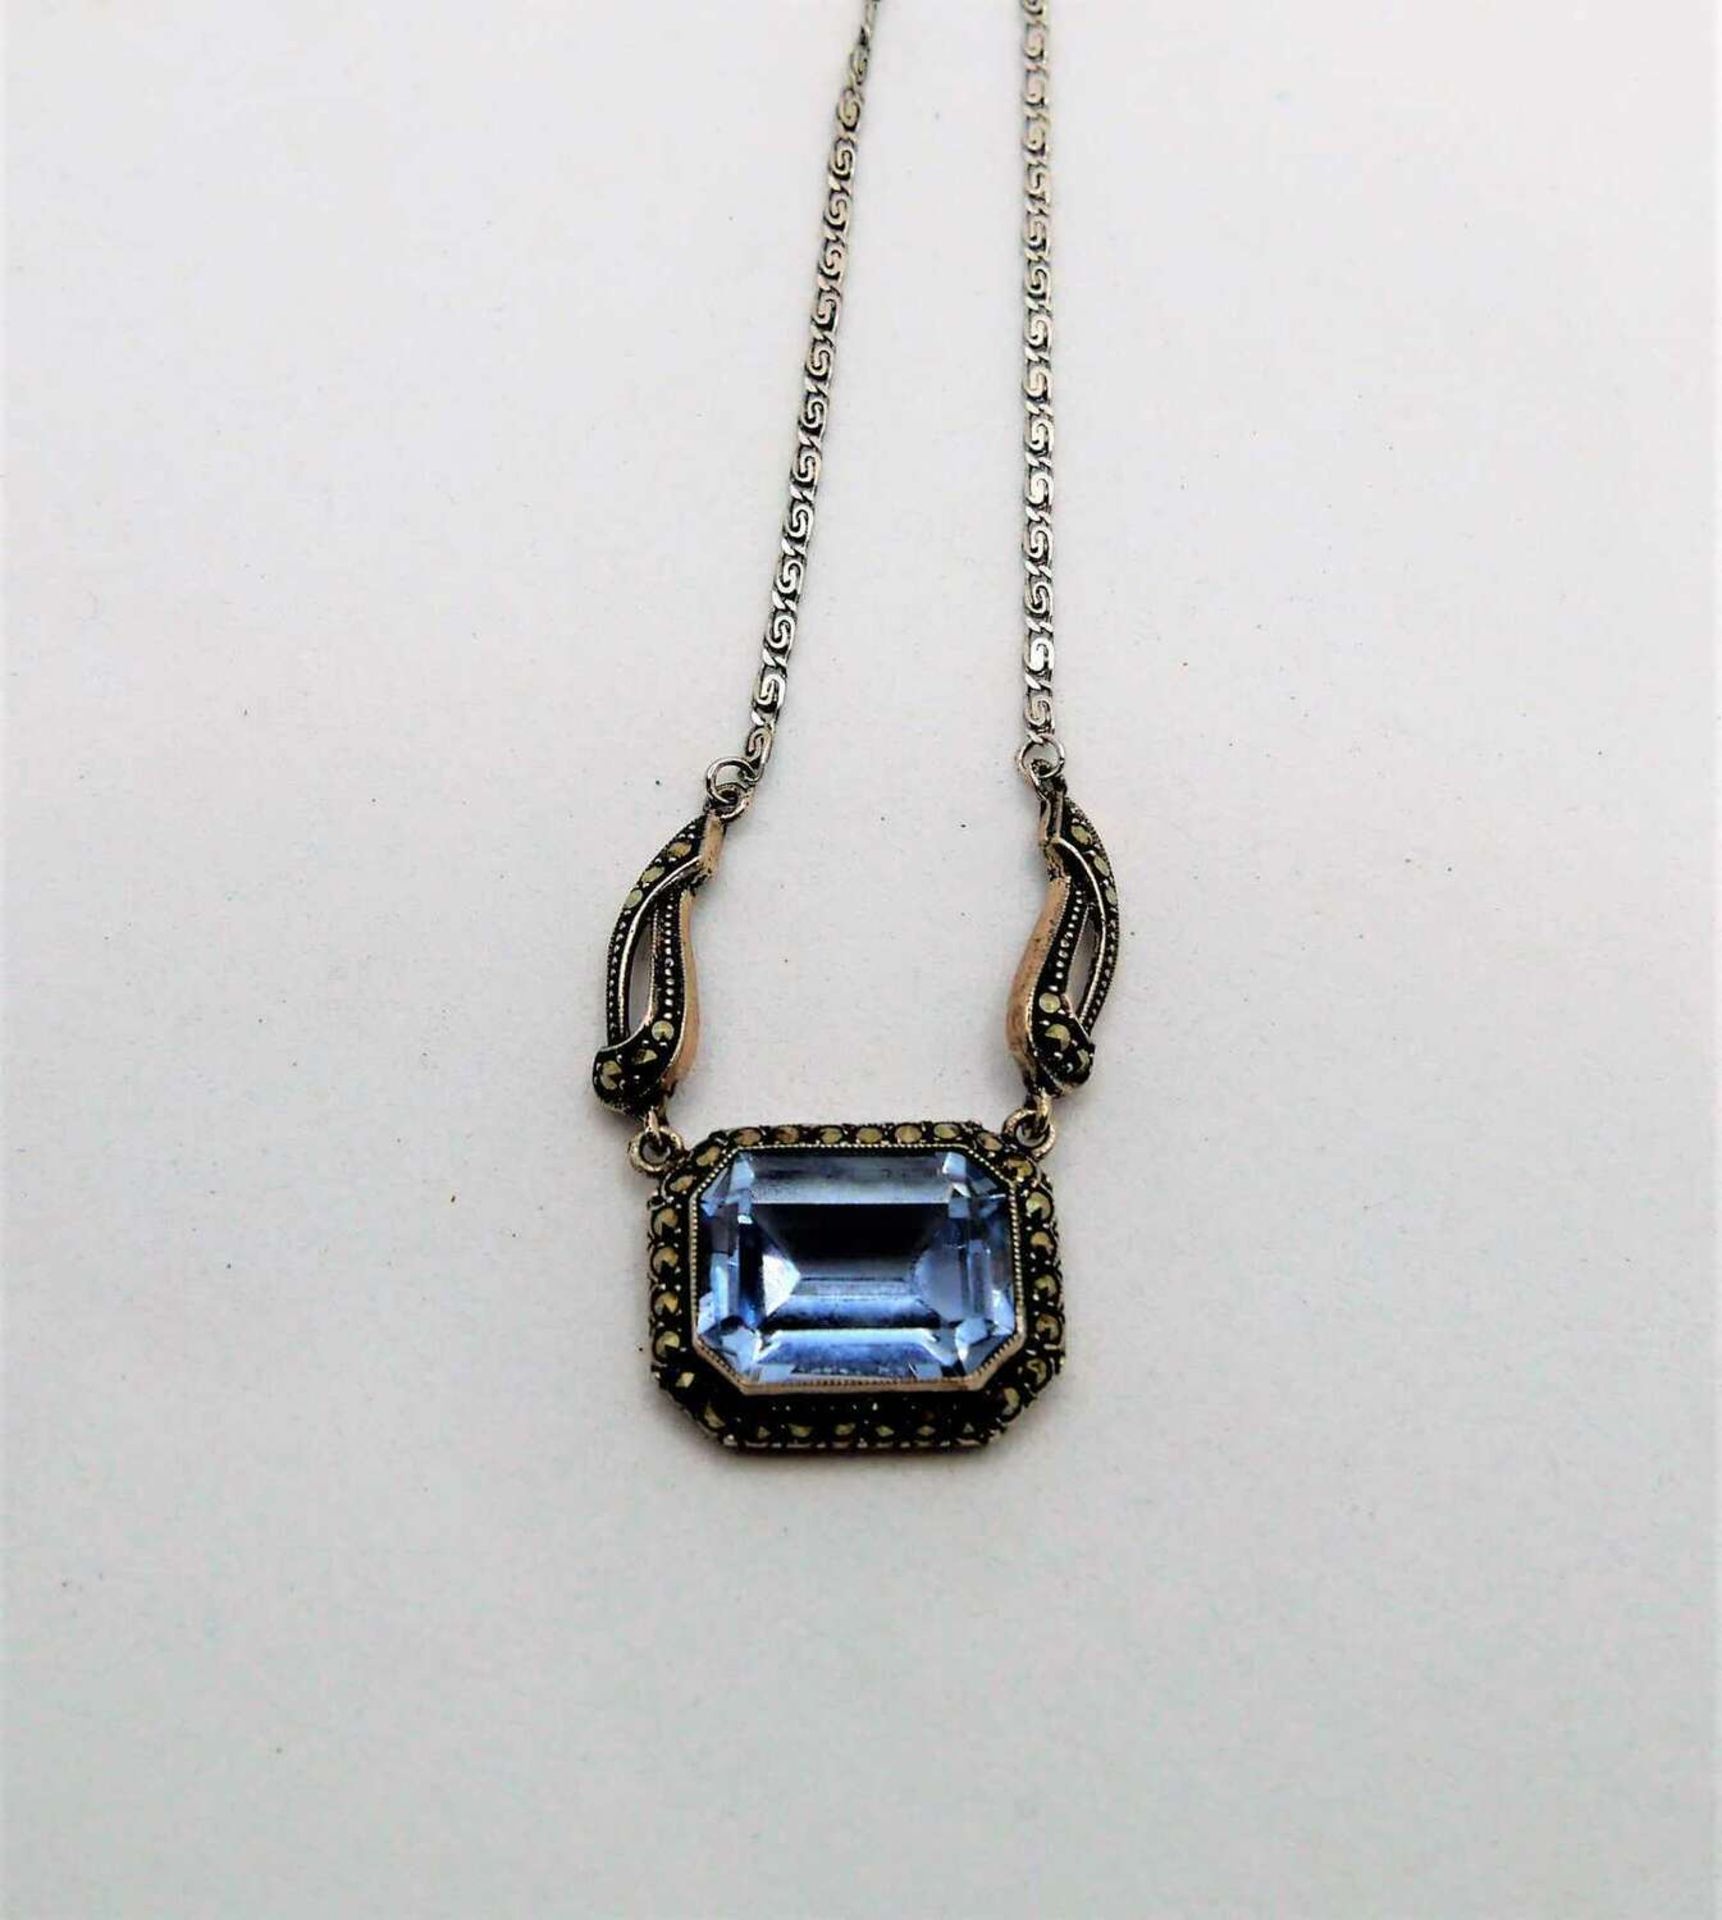 Collier im Jugendstil, 925er Silber, besetzt mit 1 Blautopas. Länge ca. 46 cm Art Nouveau necklace, - Image 2 of 2